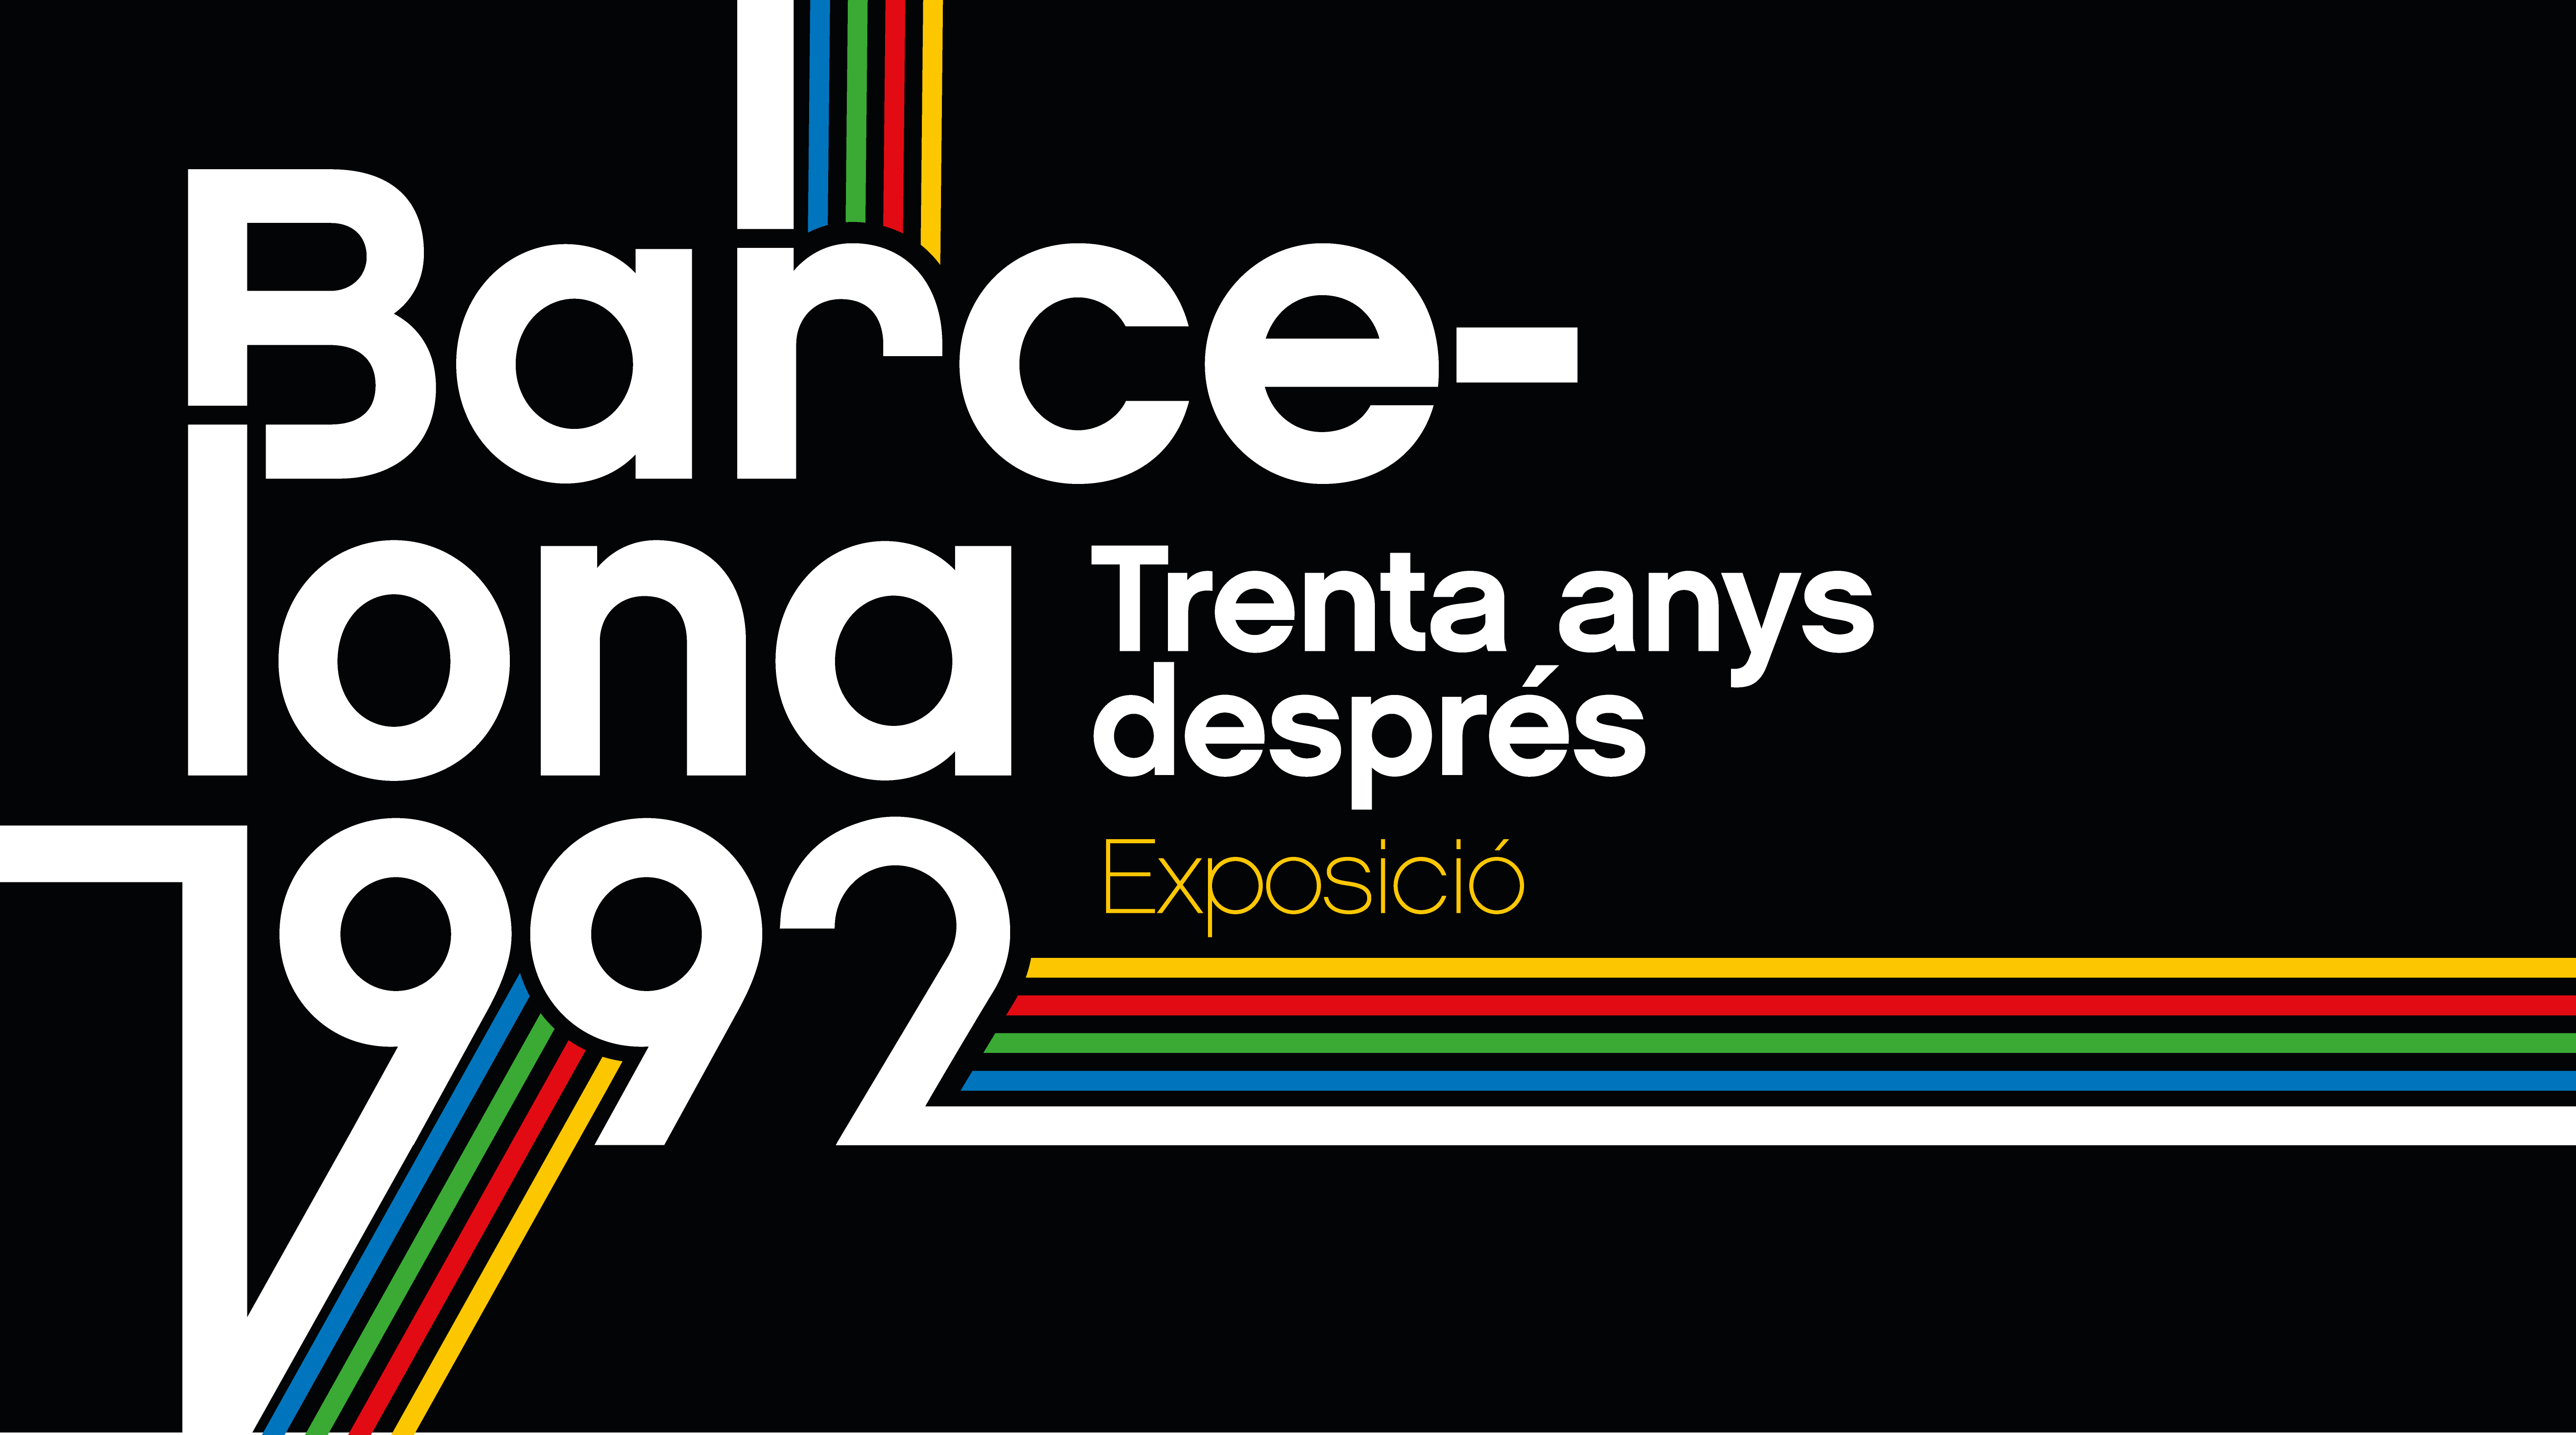 cartell exposicio barcelona 1992